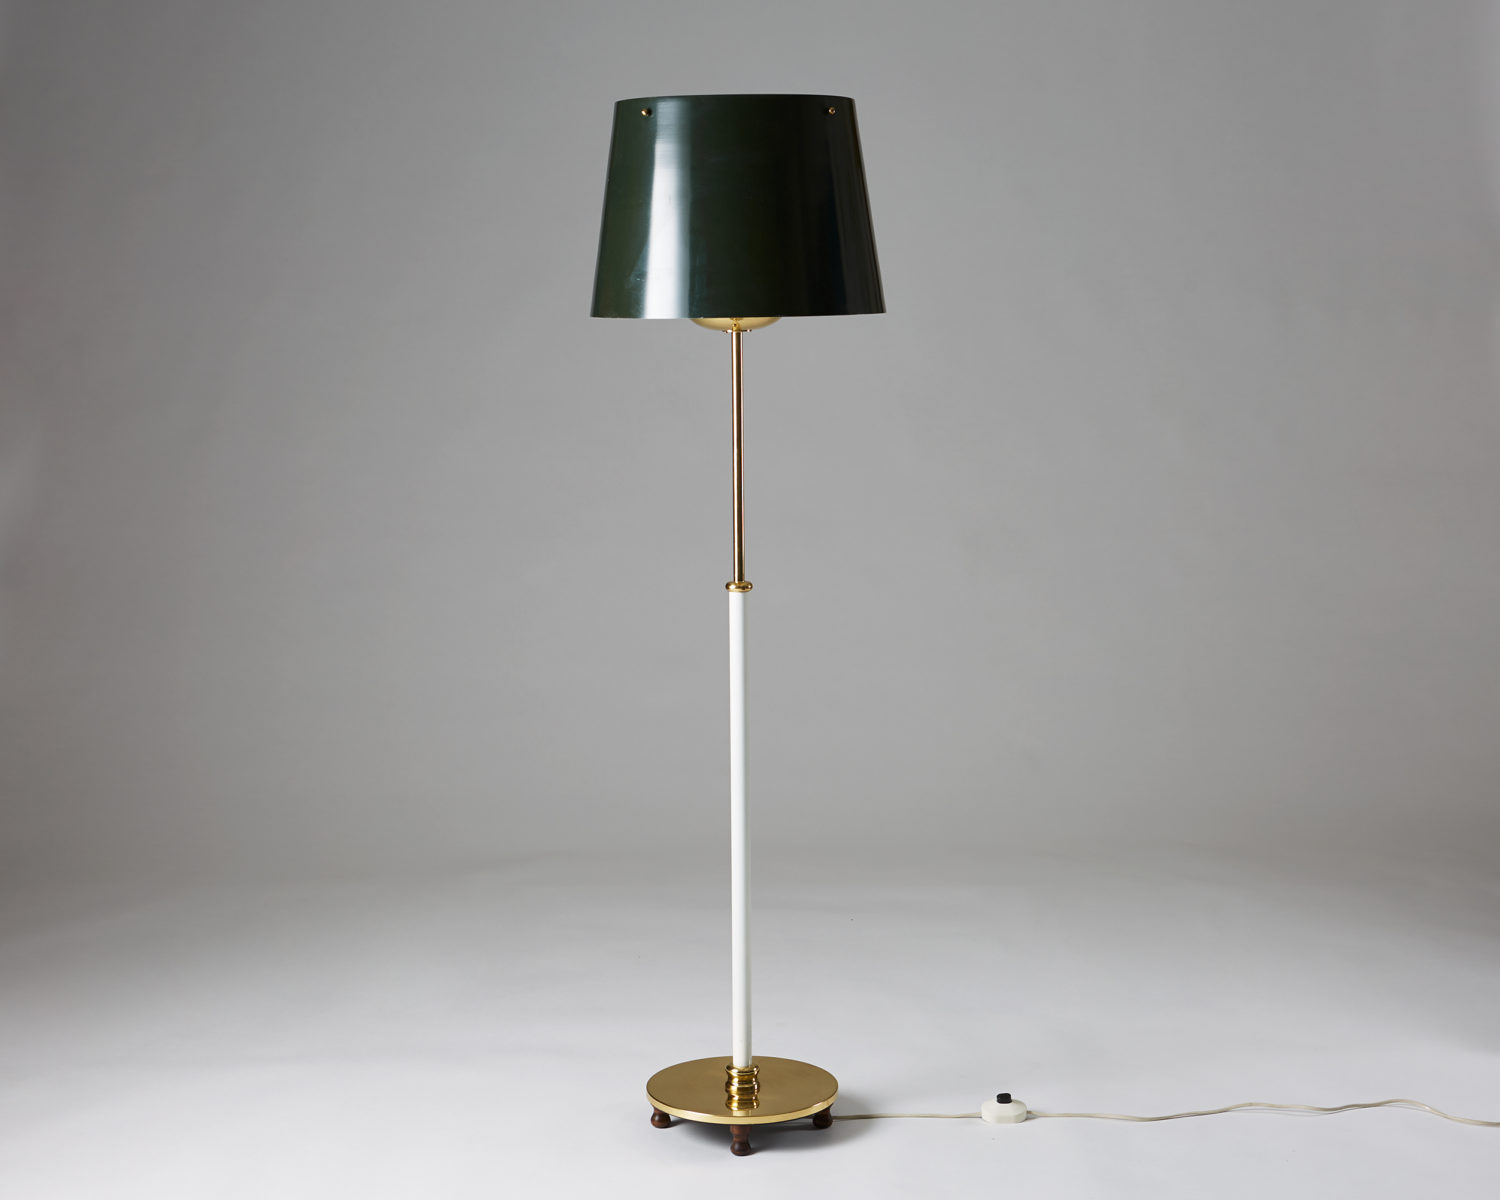 Floor Lamp Designed Josef Frank For Svenskt Tenn Modernity regarding sizing 1500 X 1200